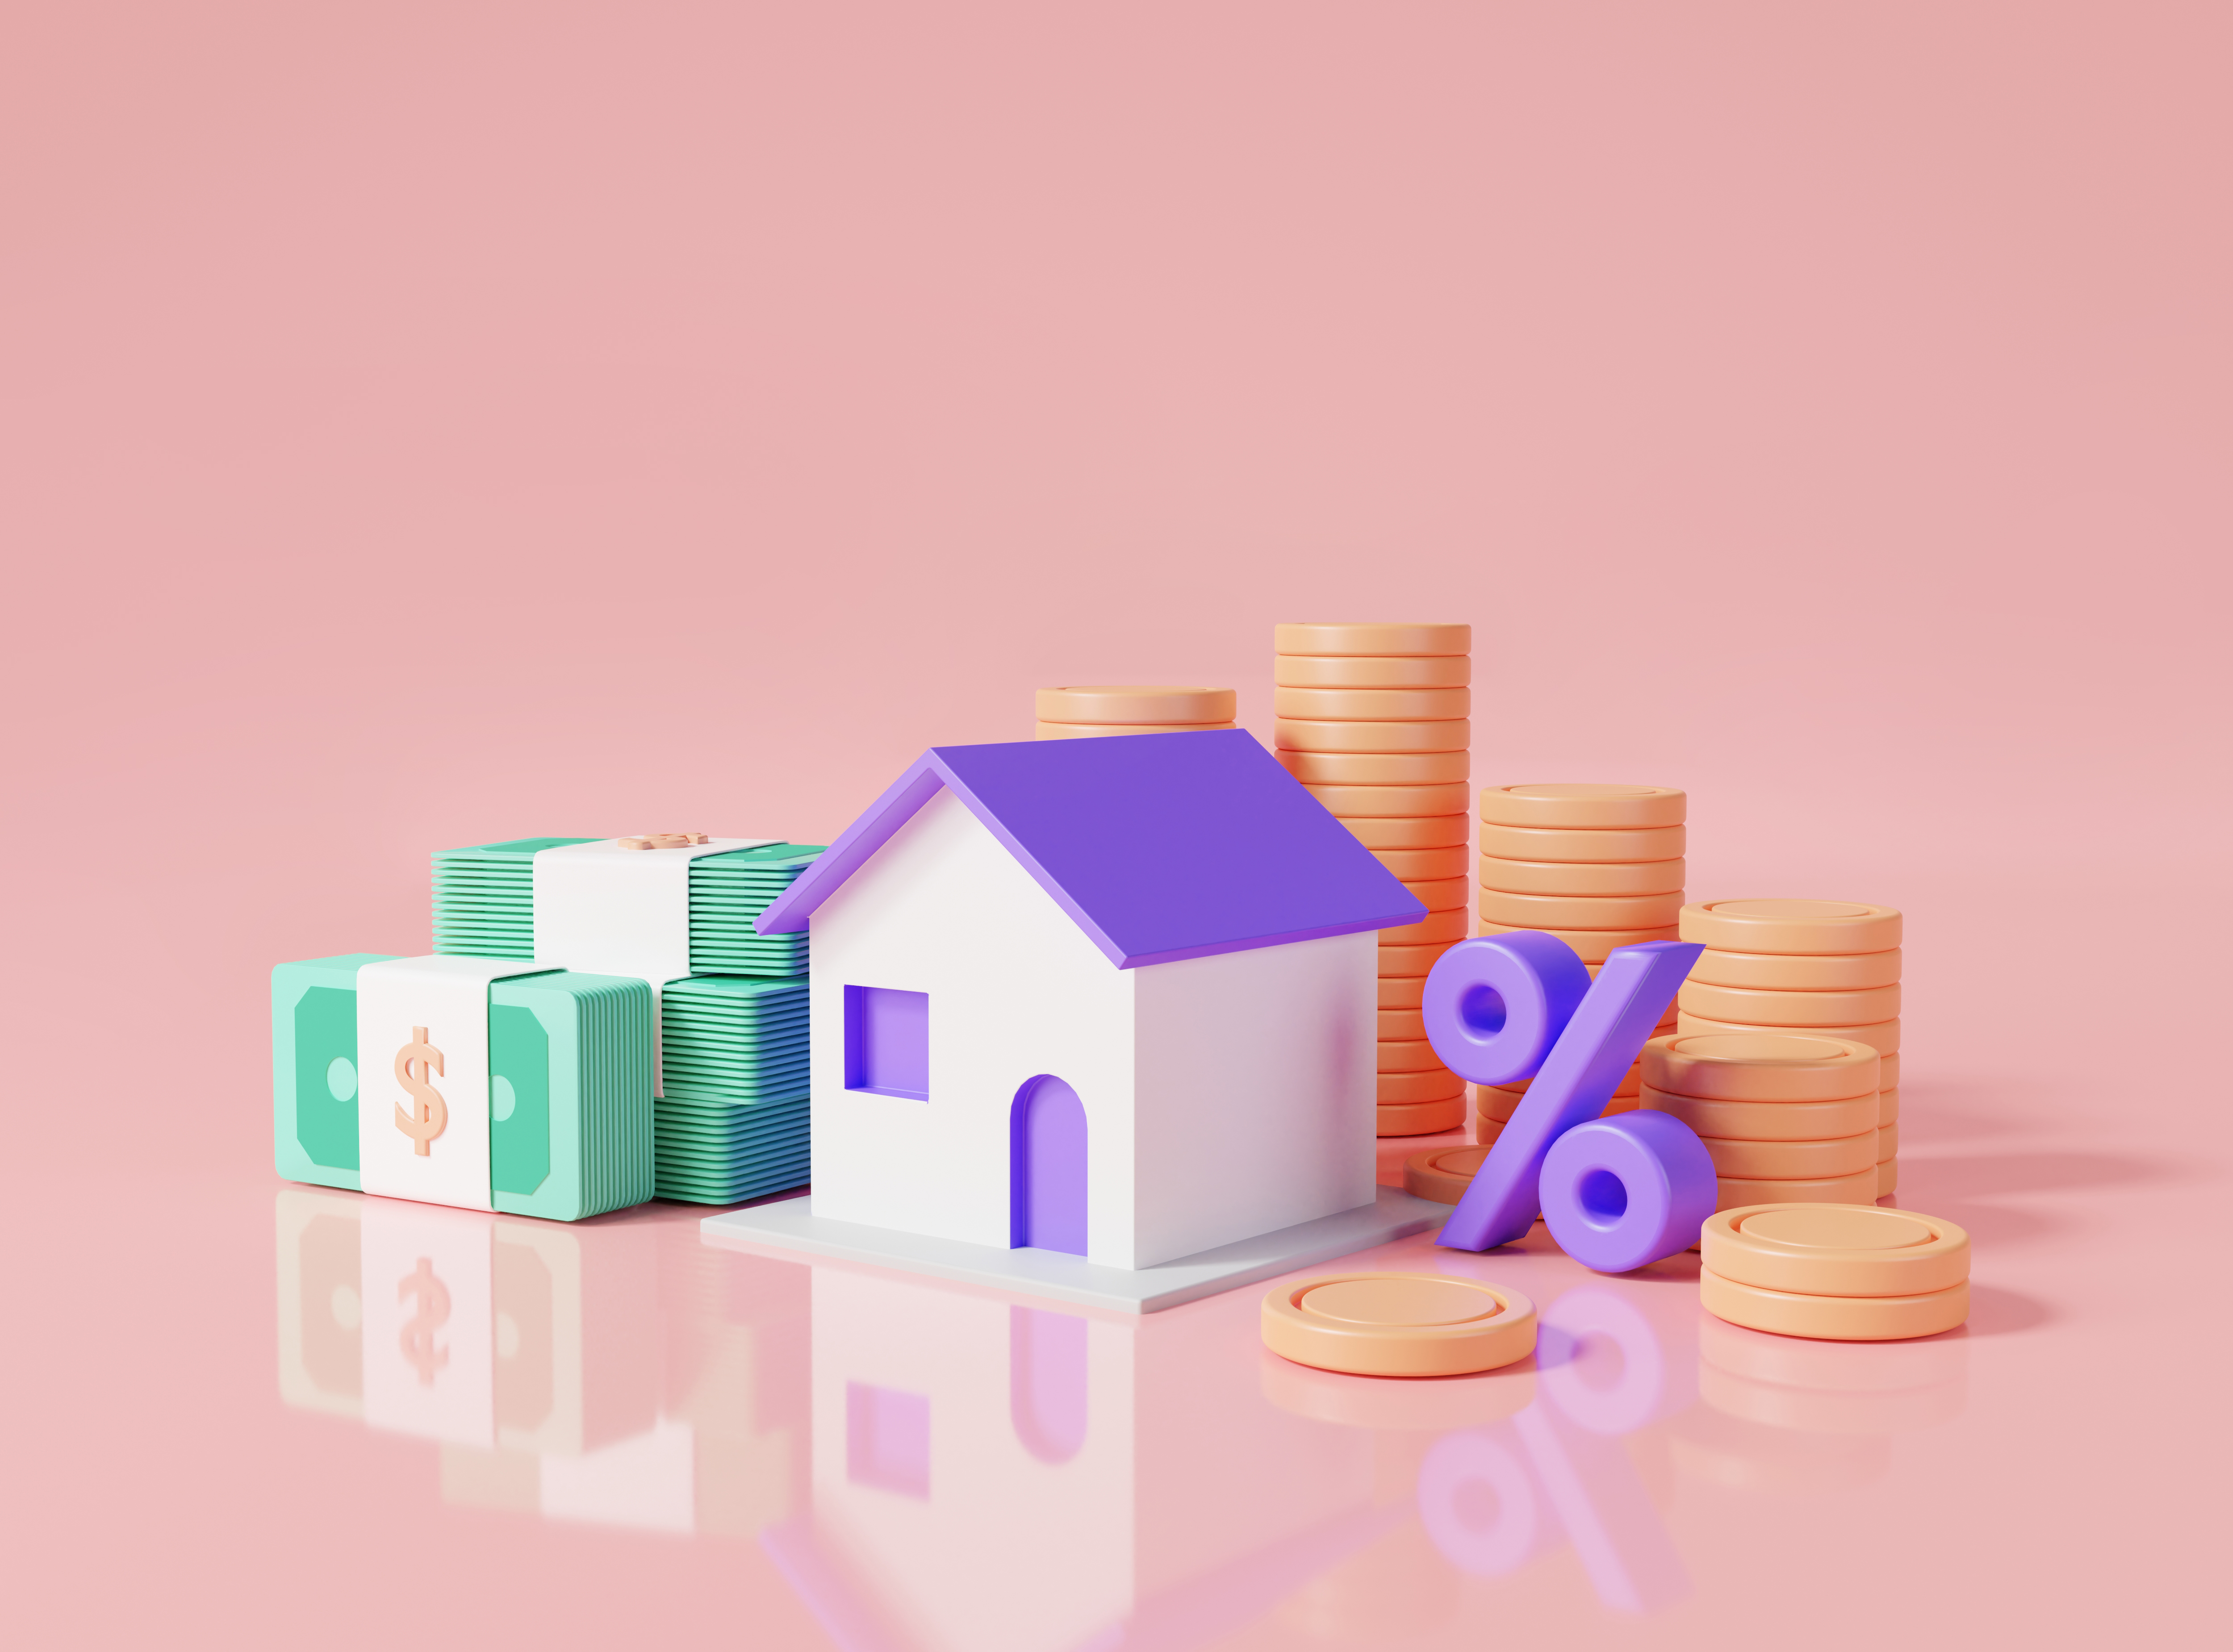 주택담보대출 갈아타기를 나타내는 보라색 주택, 지폐, 동전, 퍼센트 이미지이다.